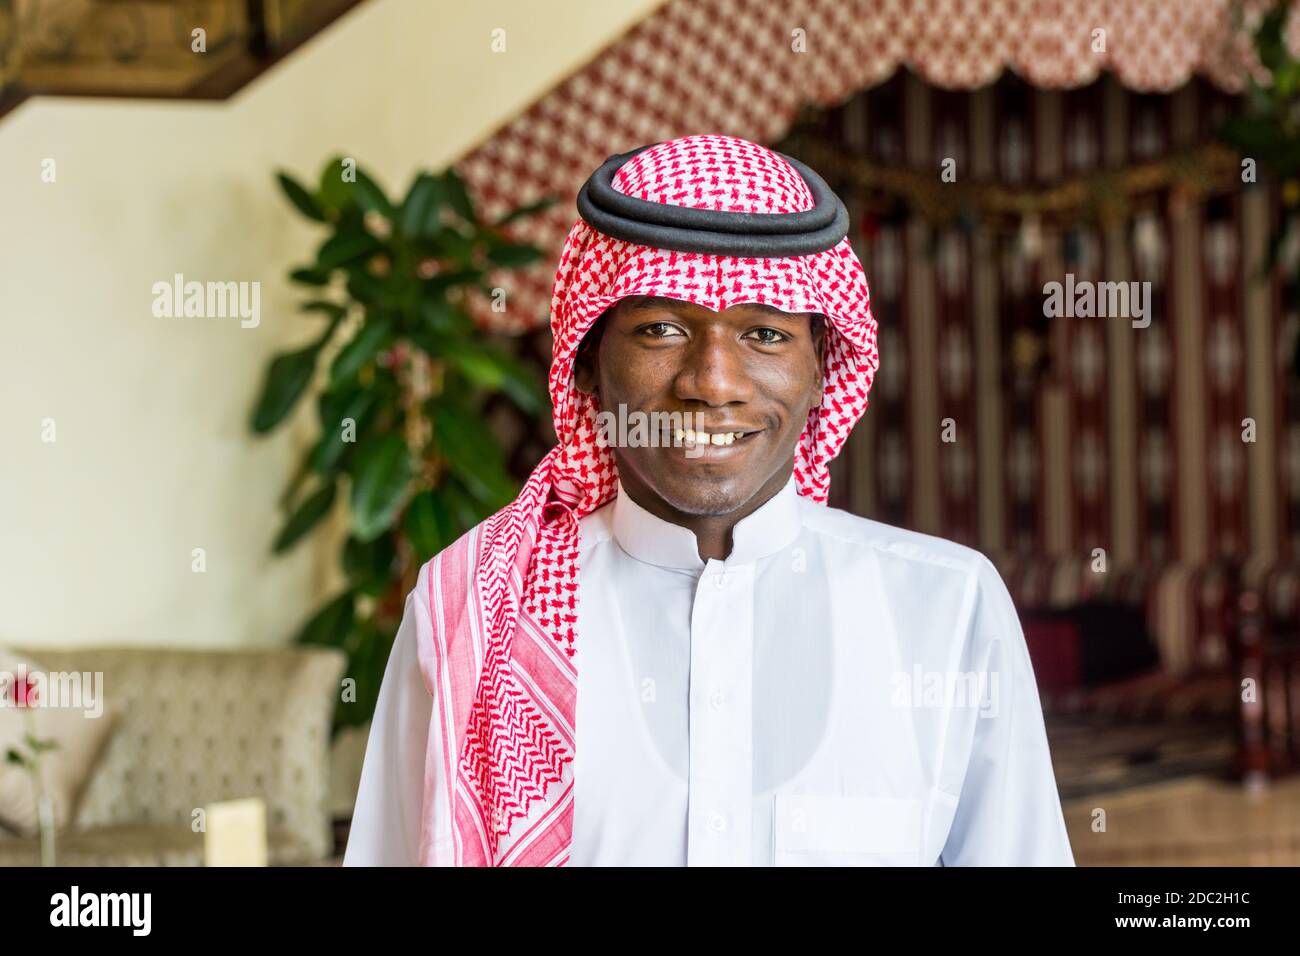 Ein Saudi-arabischer Kellner in traditioneller arabischer Kleidung mit Hintergrund eines Luxushotels in Dammam City, Königreich Saudi-Arabien Stockfoto